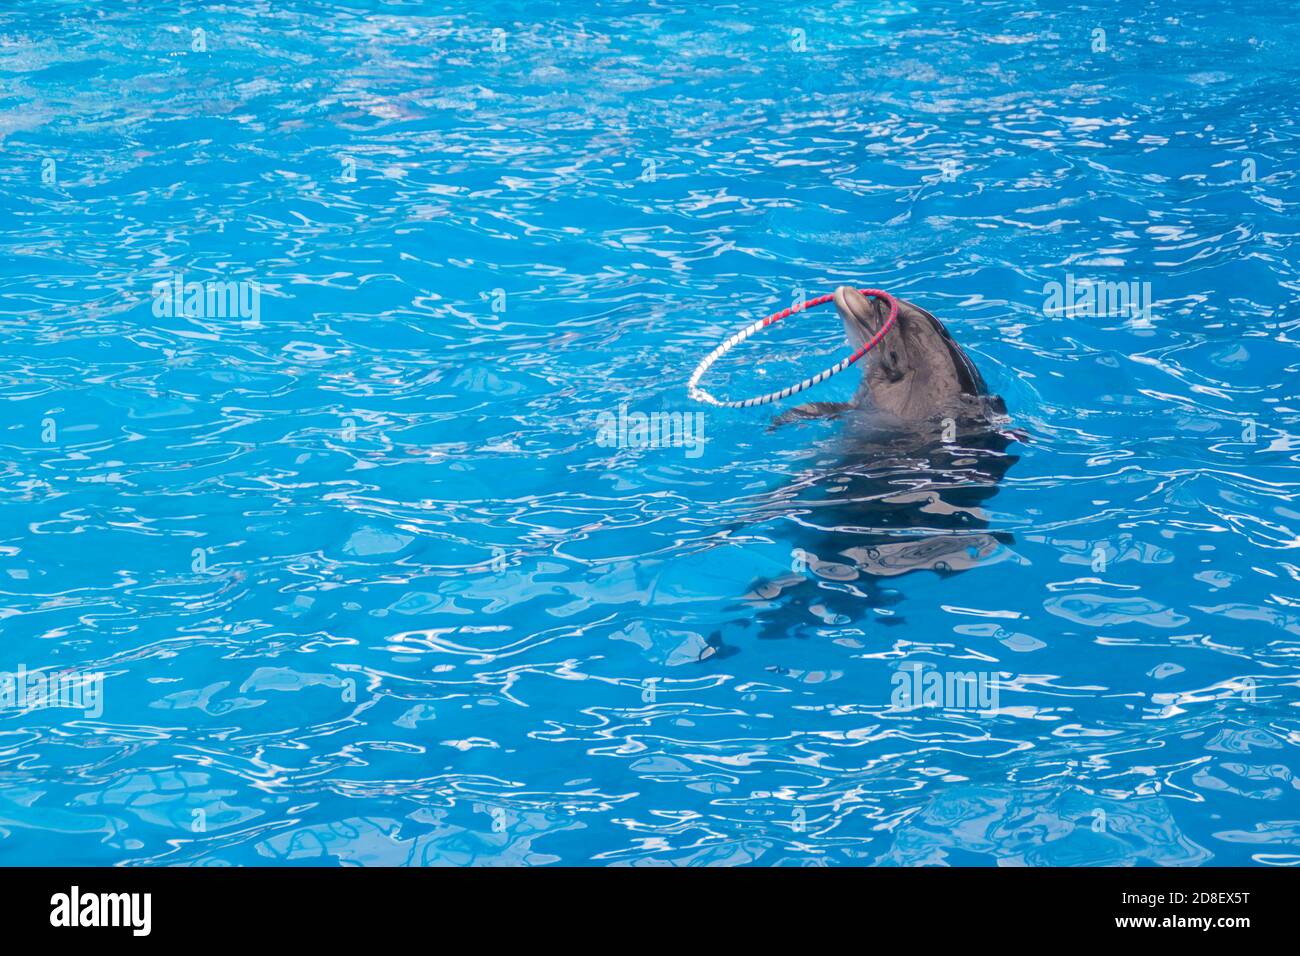 Les dauphins gris mignons nagent dans l'eau bleue. Espace de copie, place pour votre texte. Dauphins à gros nez, mammifères marins sauvages. Vierge pour la publicité nager avec les dauphins, delphinarium, spectacles, aquarium, Banque D'Images